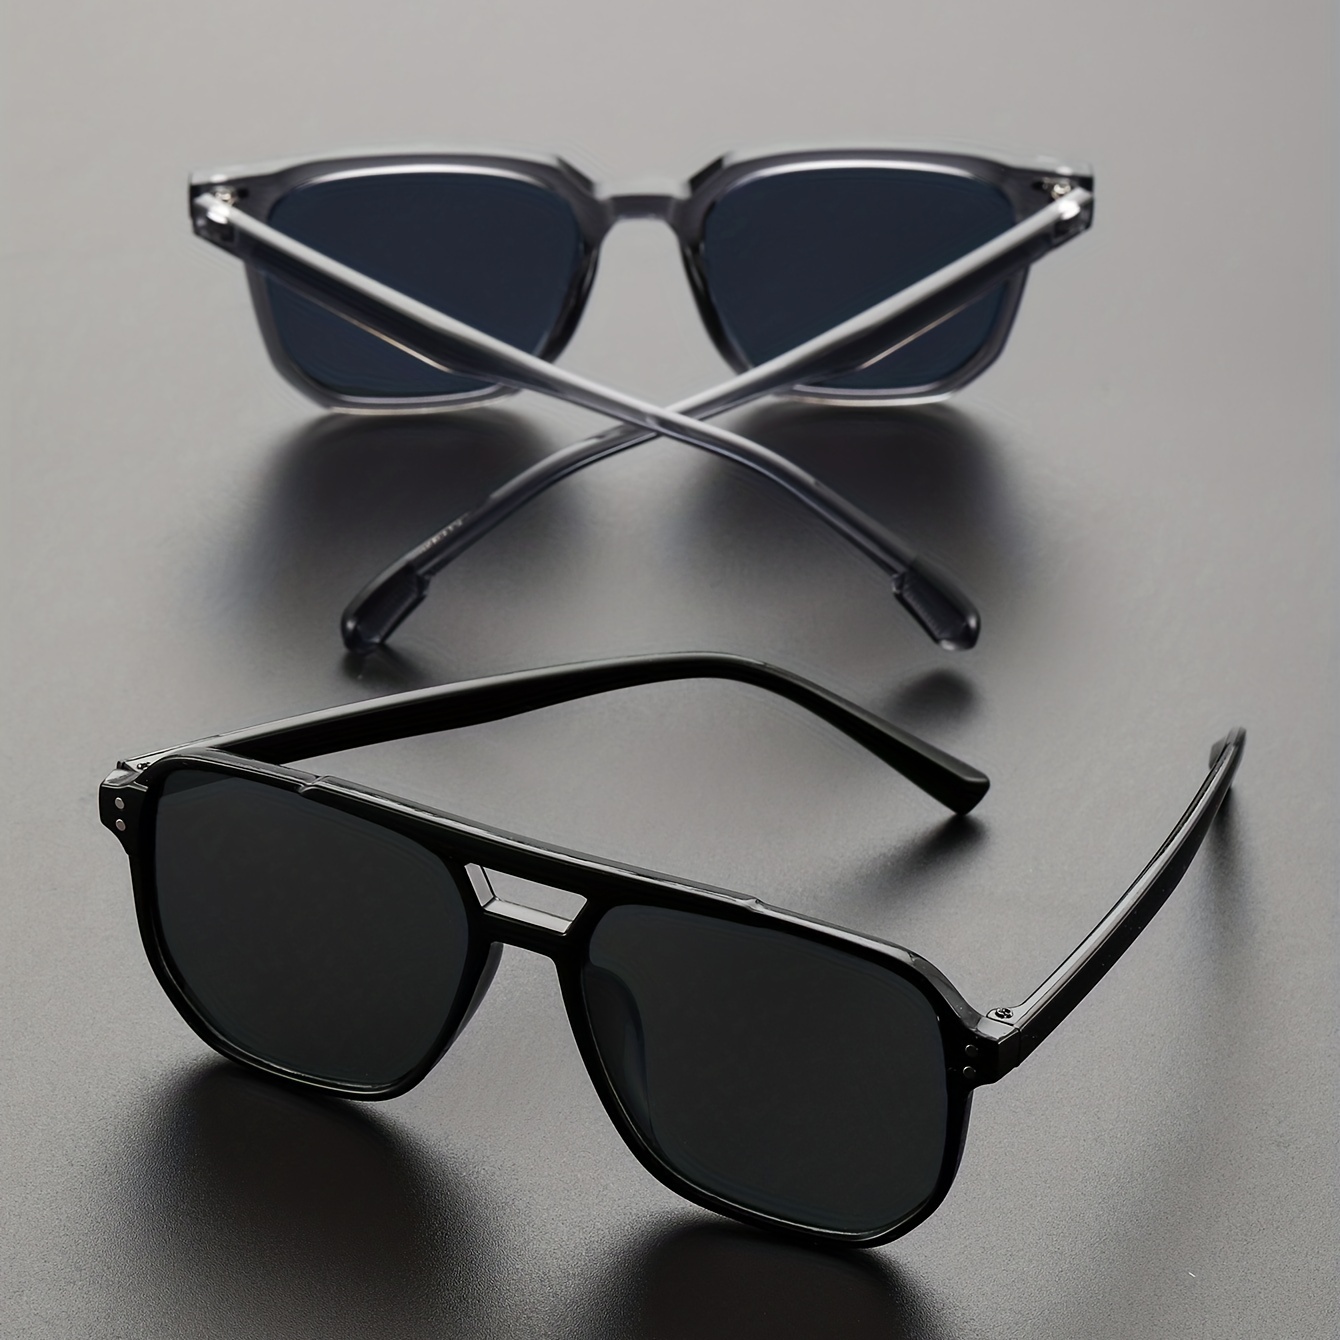 2 Pairs Mens Black Versatile Classic Sunglasses Casual Pc Square